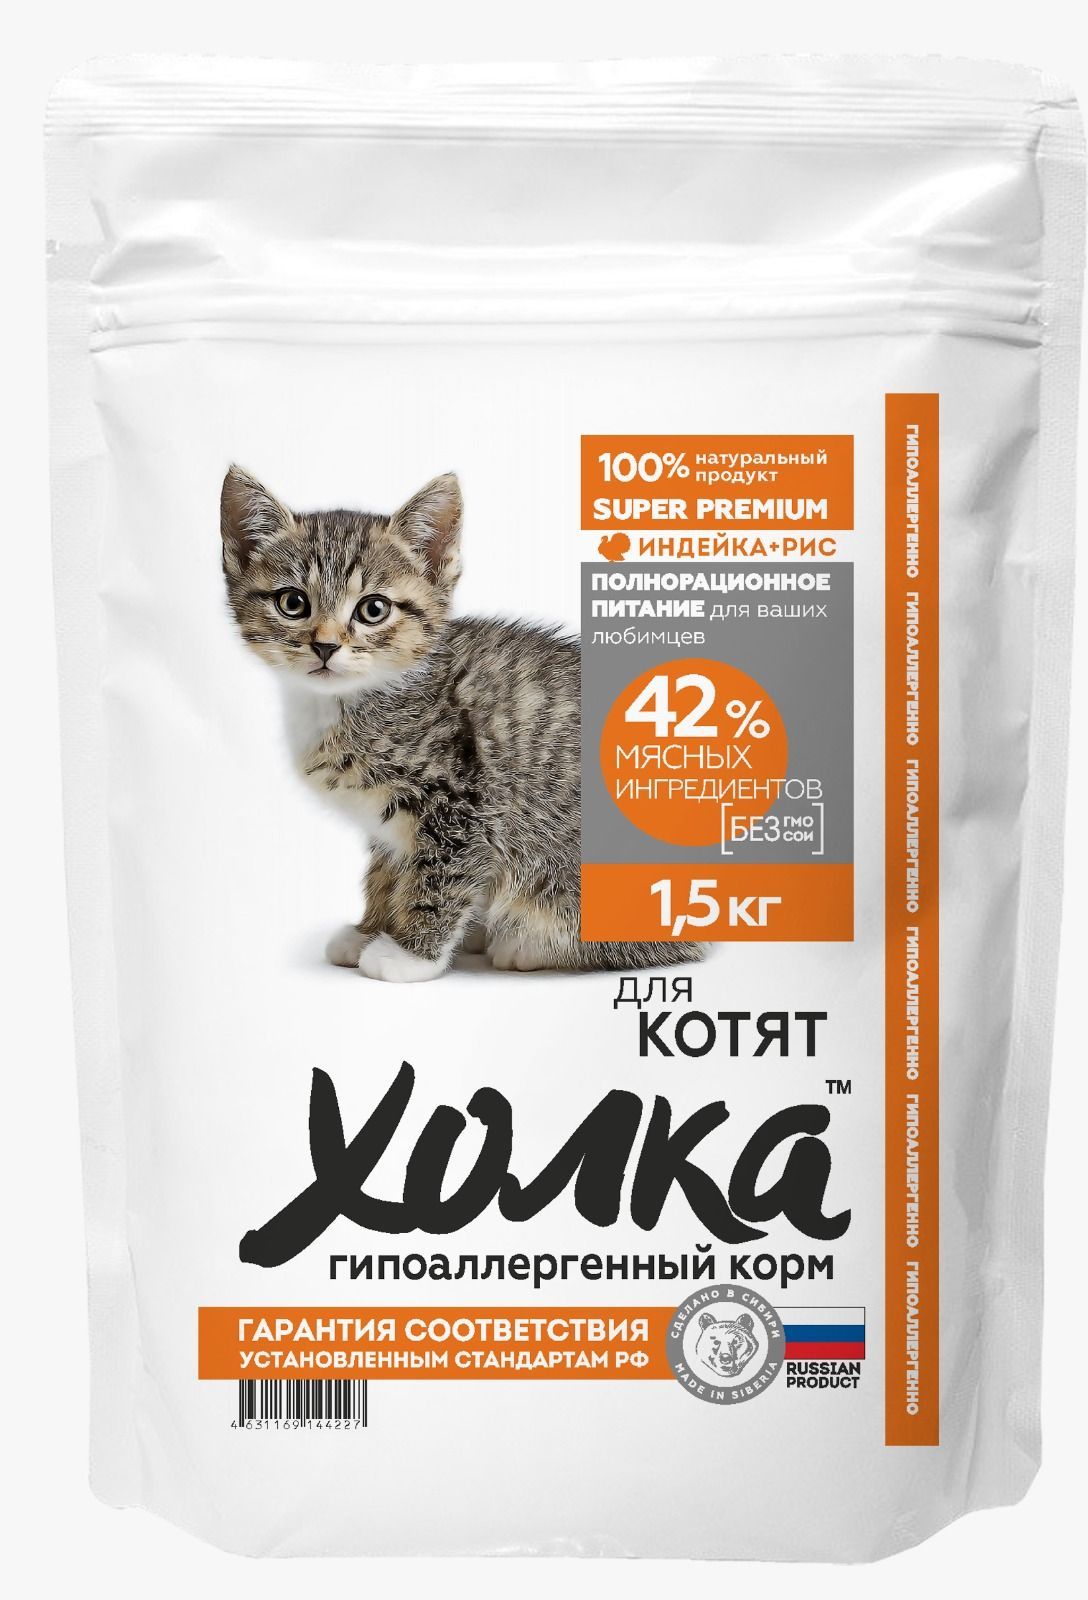 Сухой корм для котят Холка гипоаллергенный, с индейкой и рисом, 1.5 кг